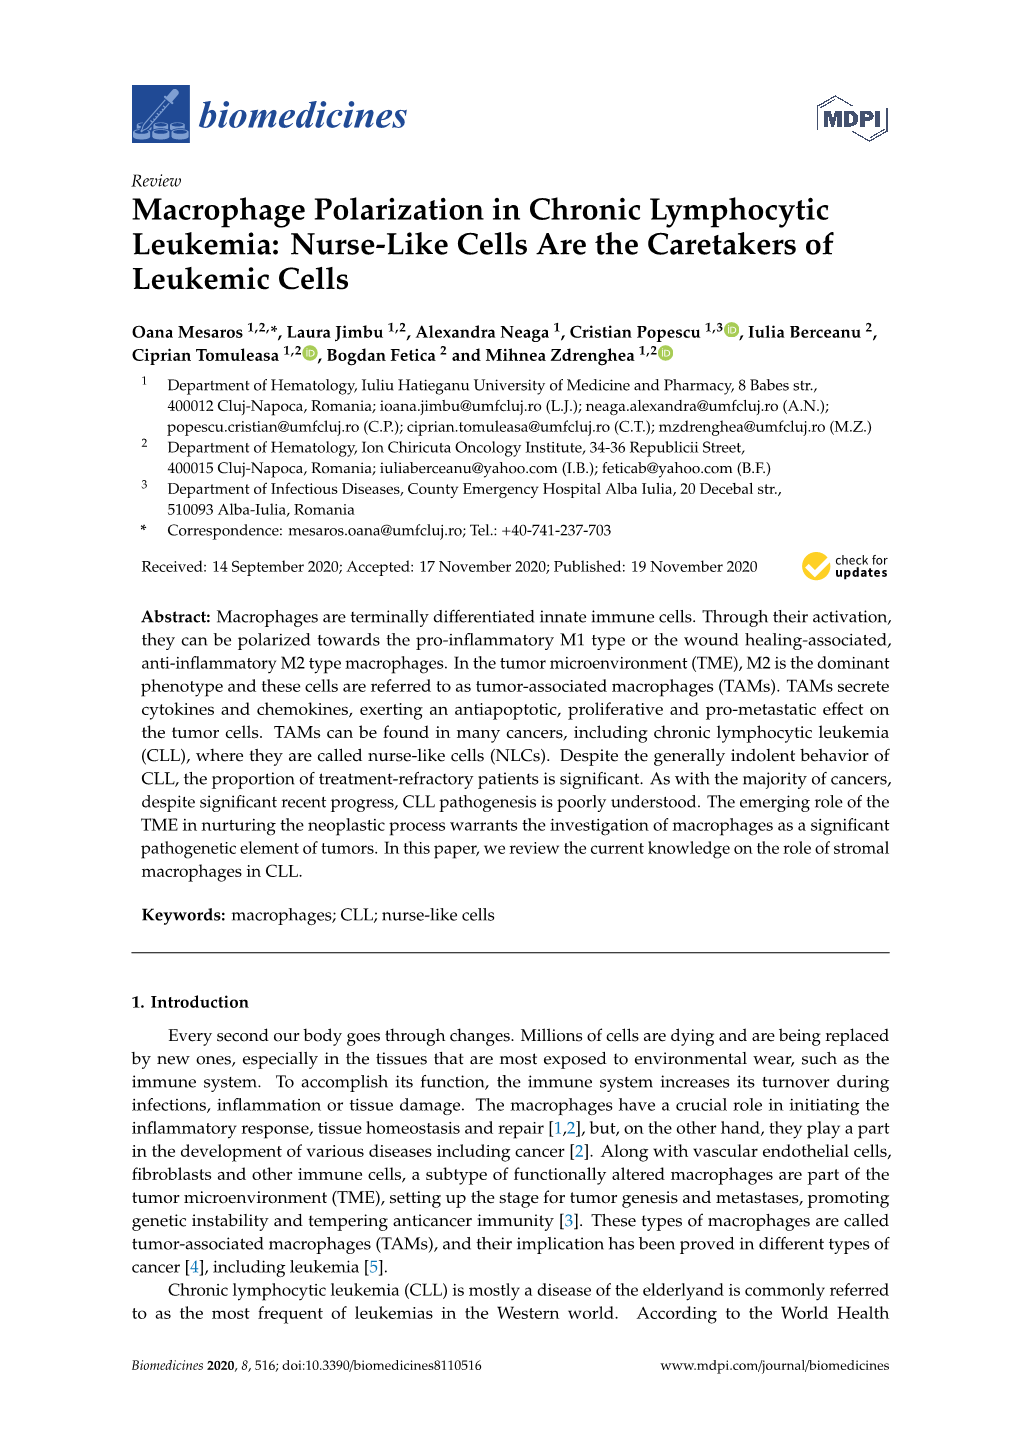 Macrophage Polarization in Chronic Lymphocytic Leukemia: Nurse-Like Cells Are the Caretakers of Leukemic Cells